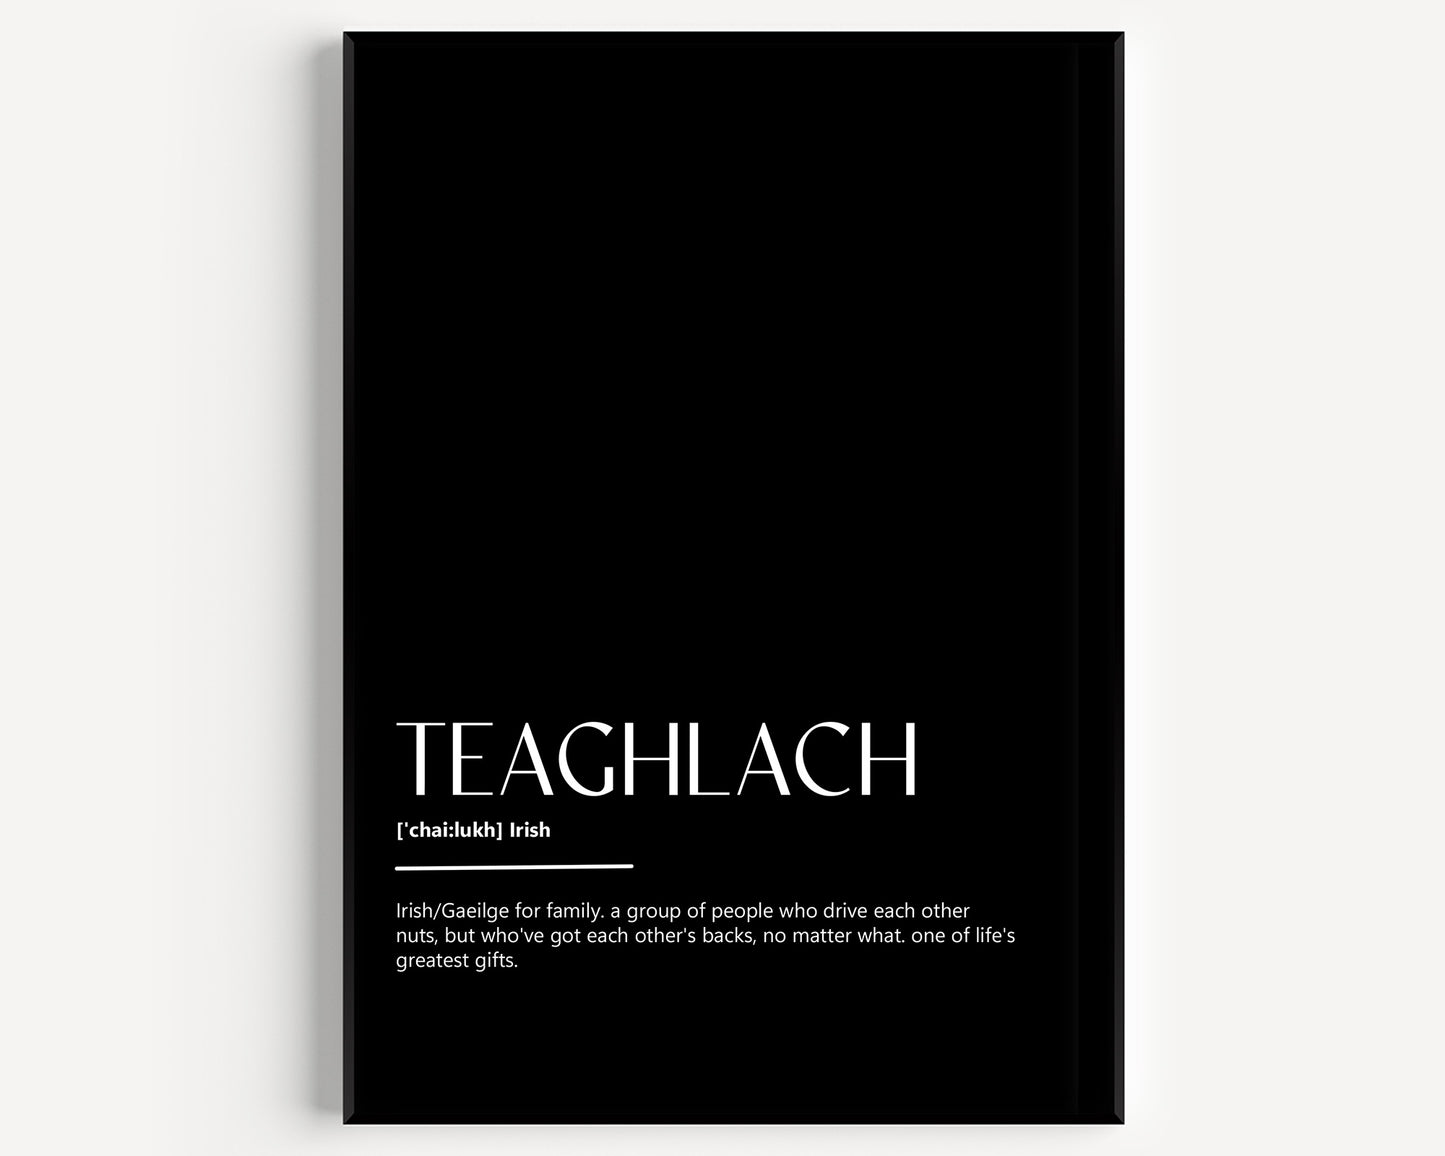 Teaglach Definition Print - Magic Posters